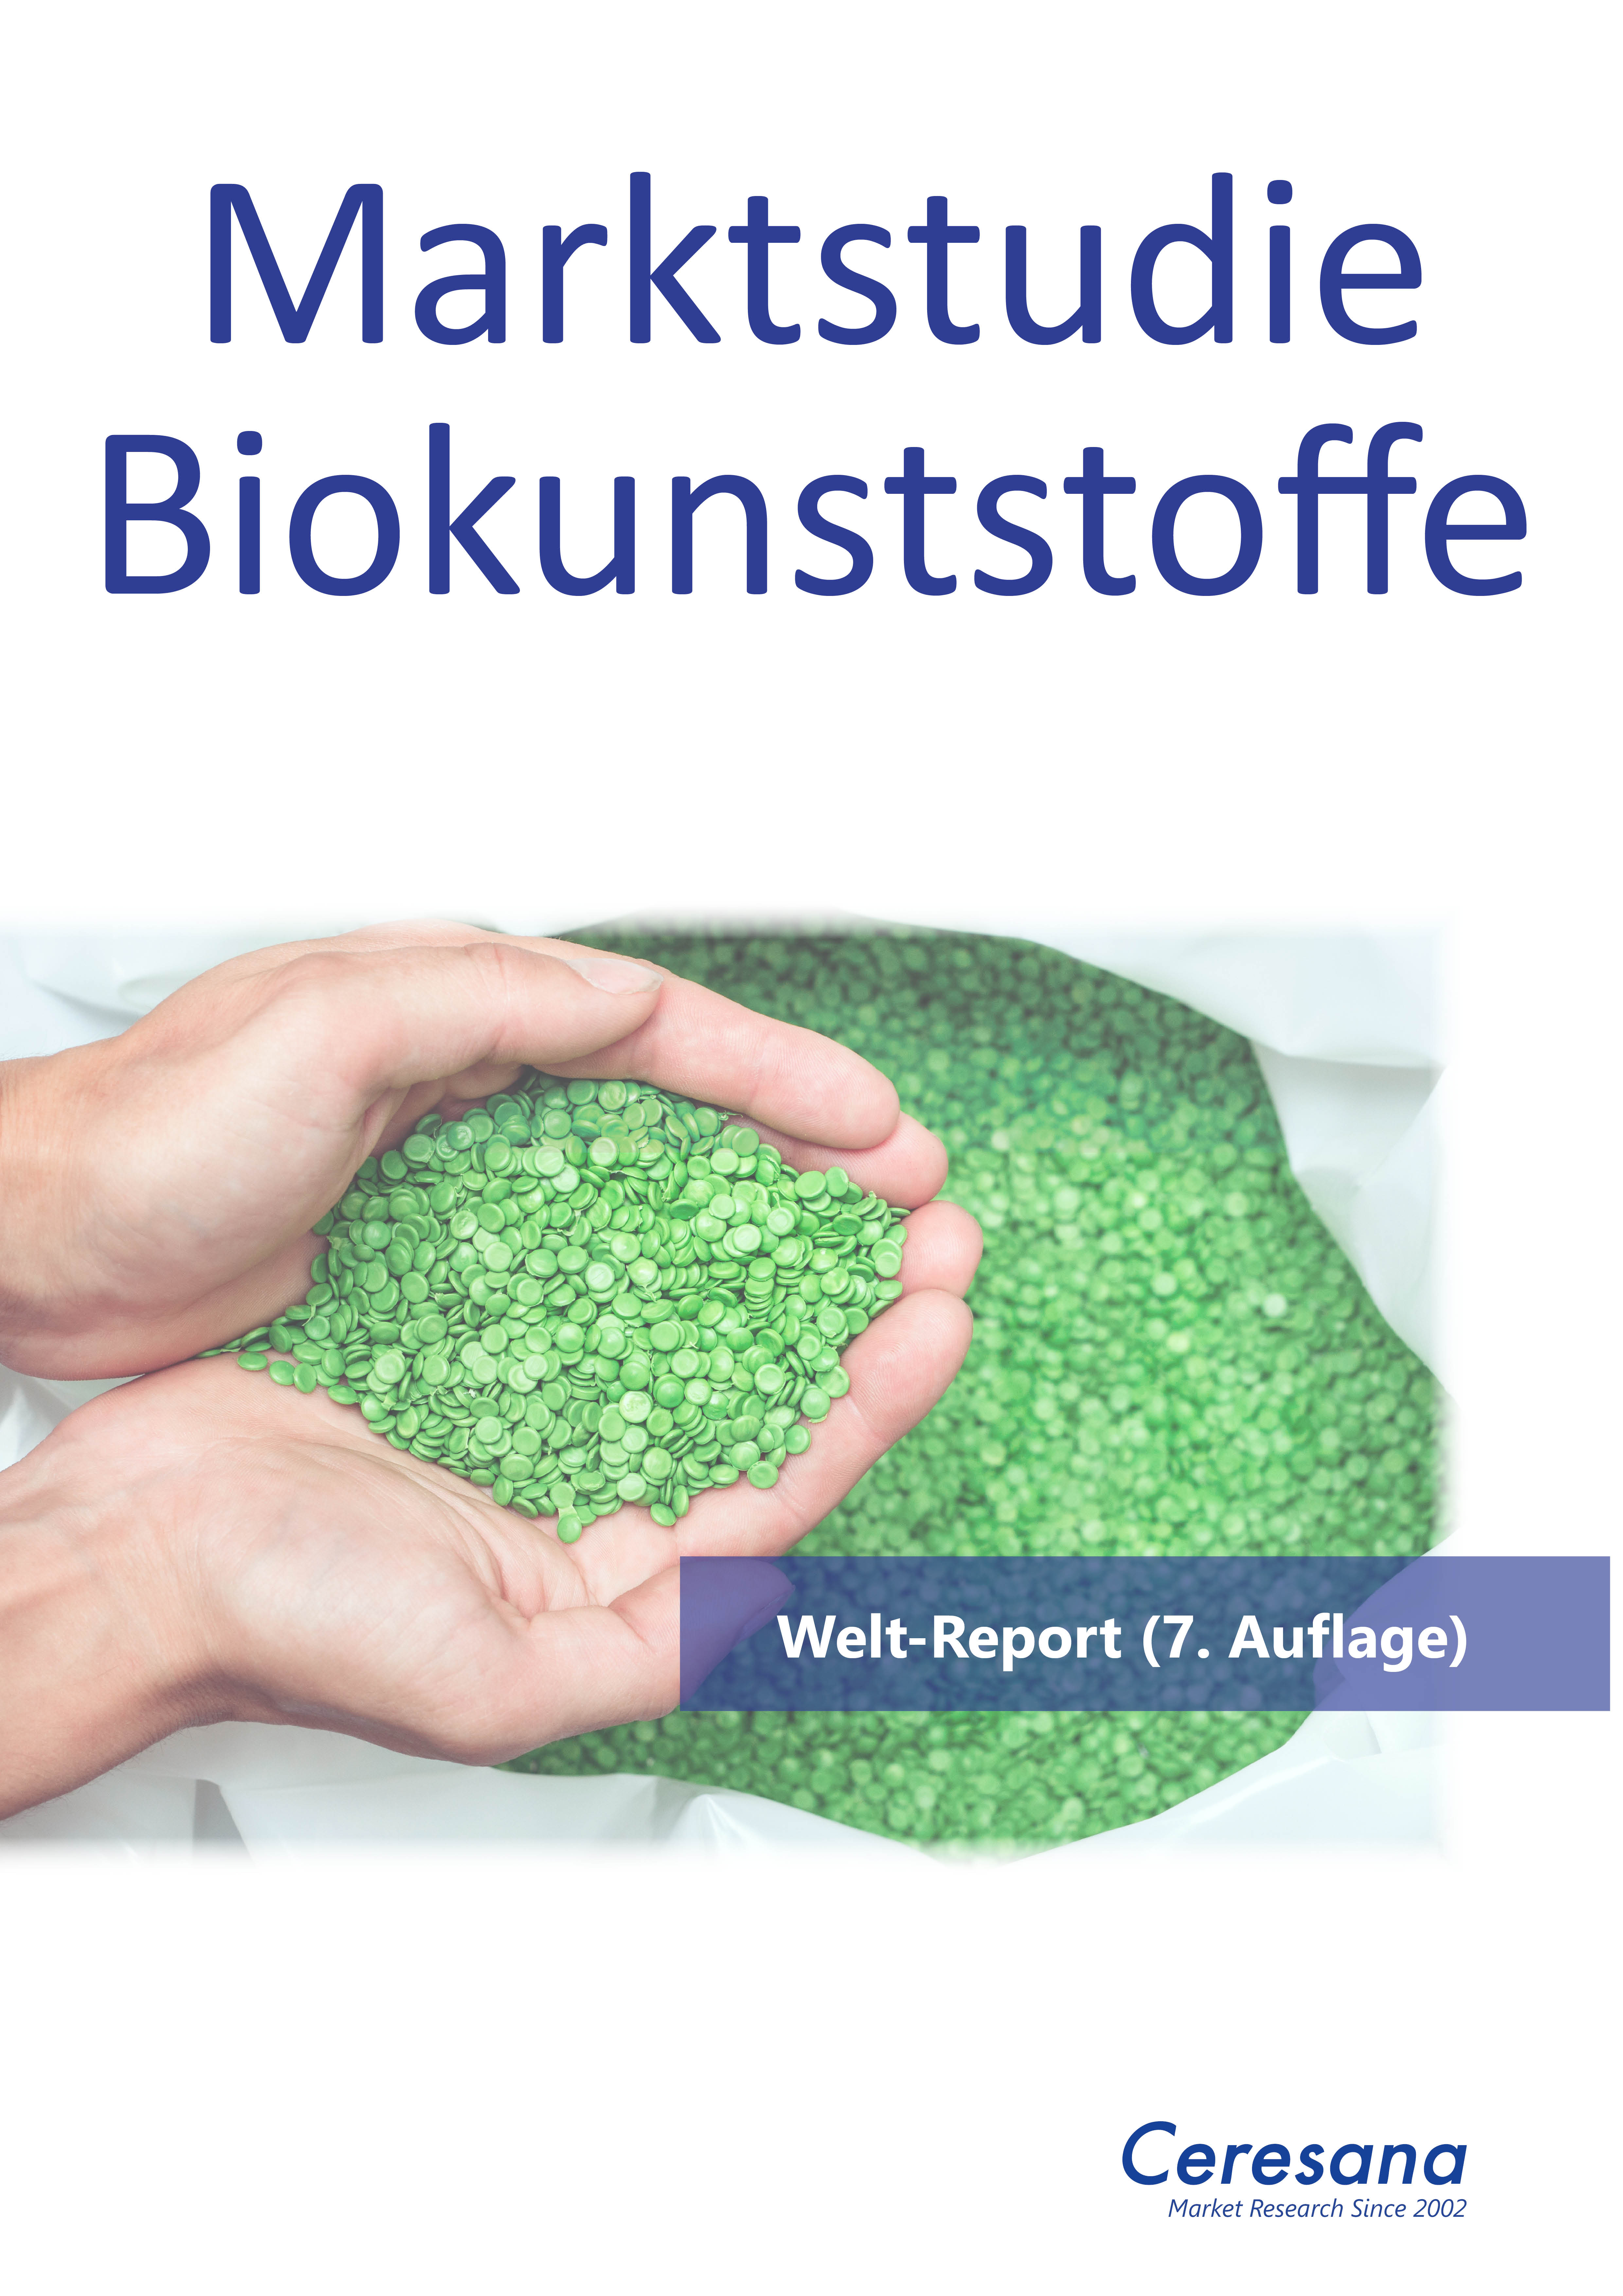 Marktstudie Biokunststoffe (7. Auflage) | Freie-Pressemitteilungen.de